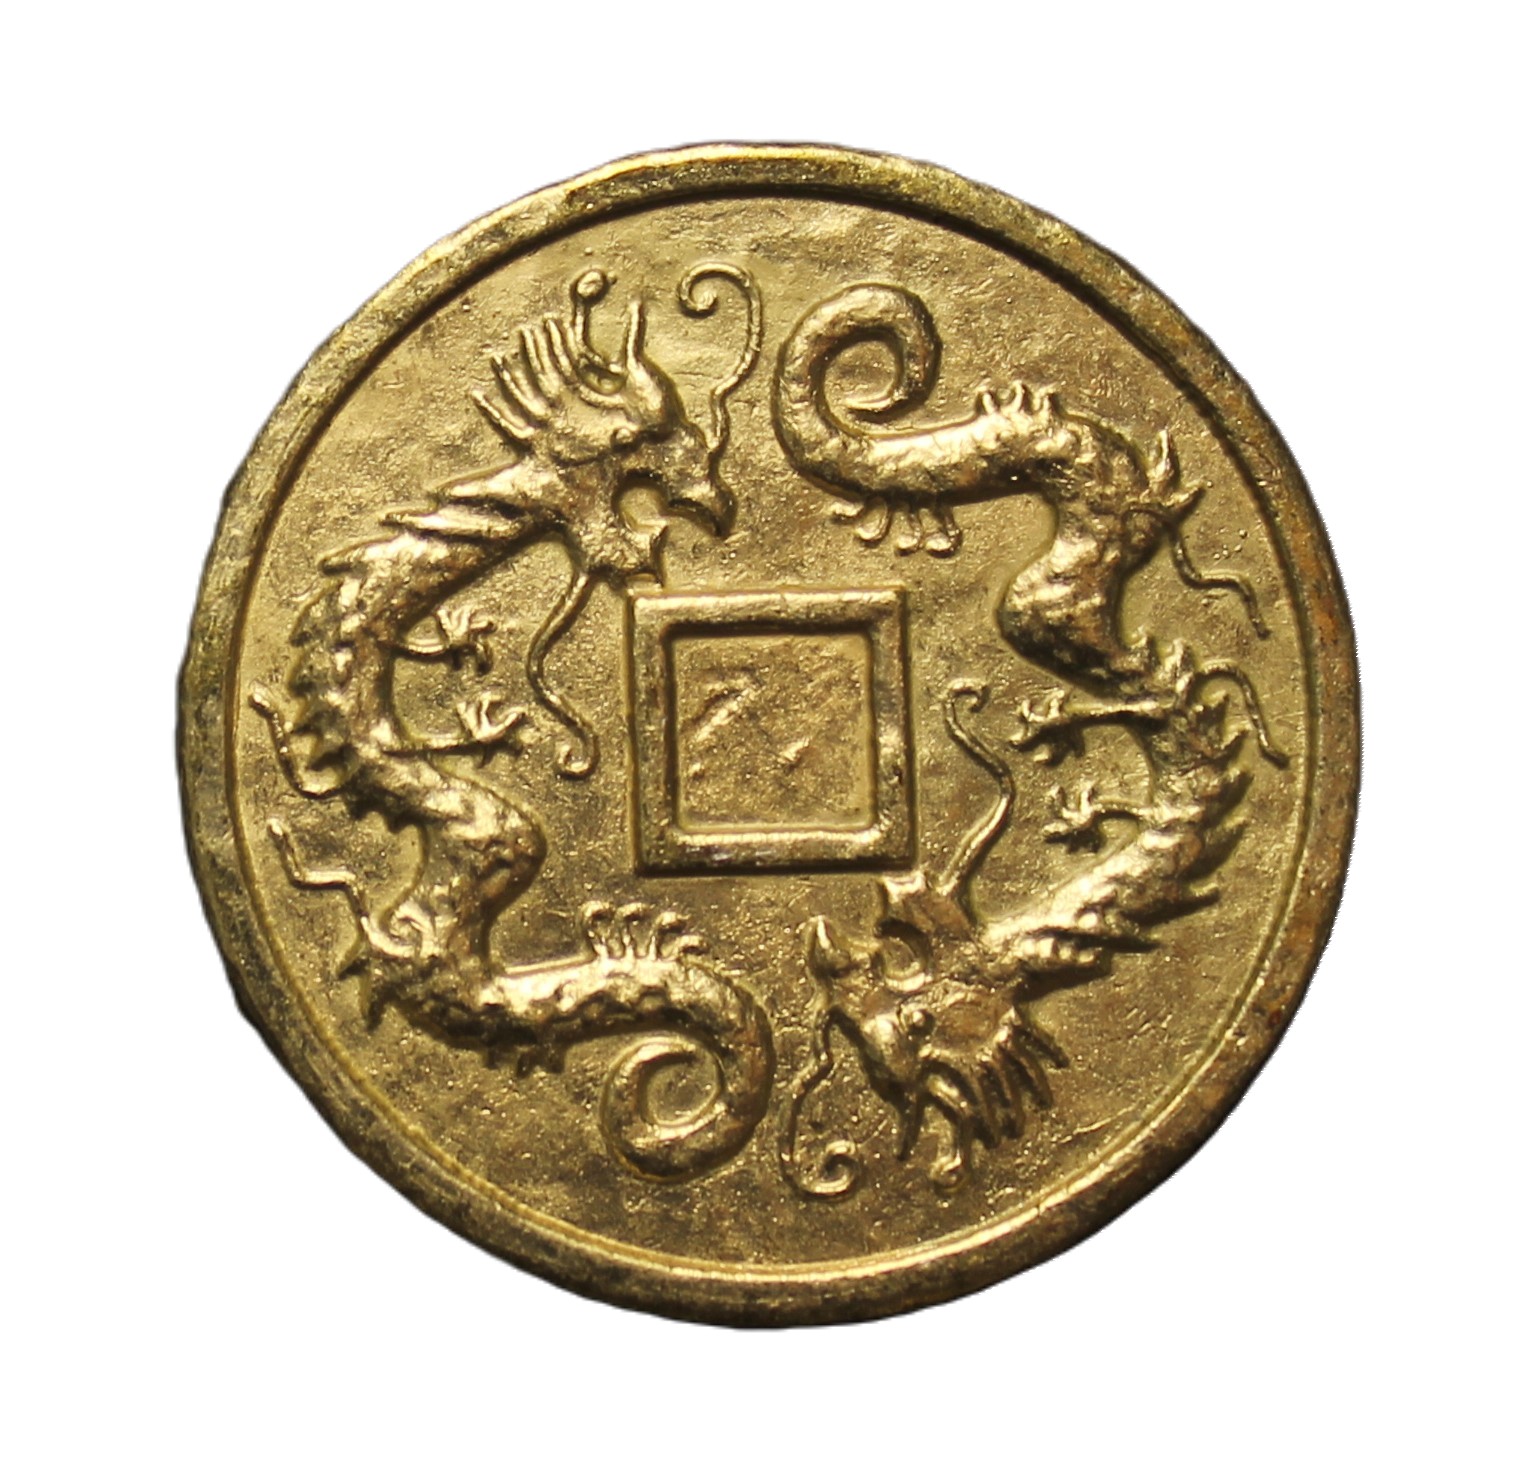 Сувенирная монета 1toy Золото магнитного моря Дракон